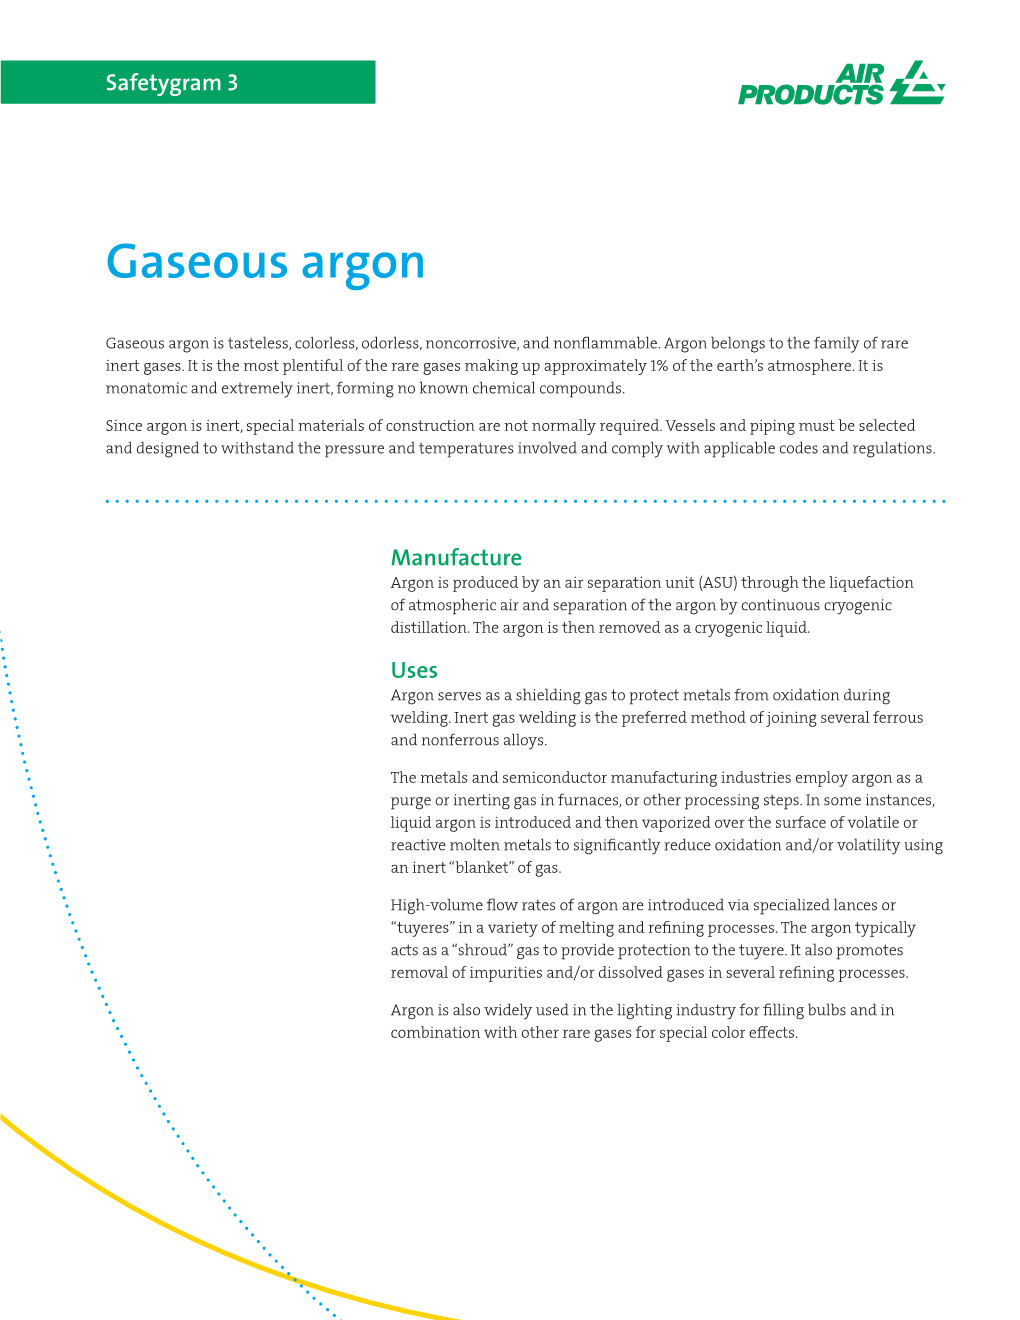 Gaseous Argon